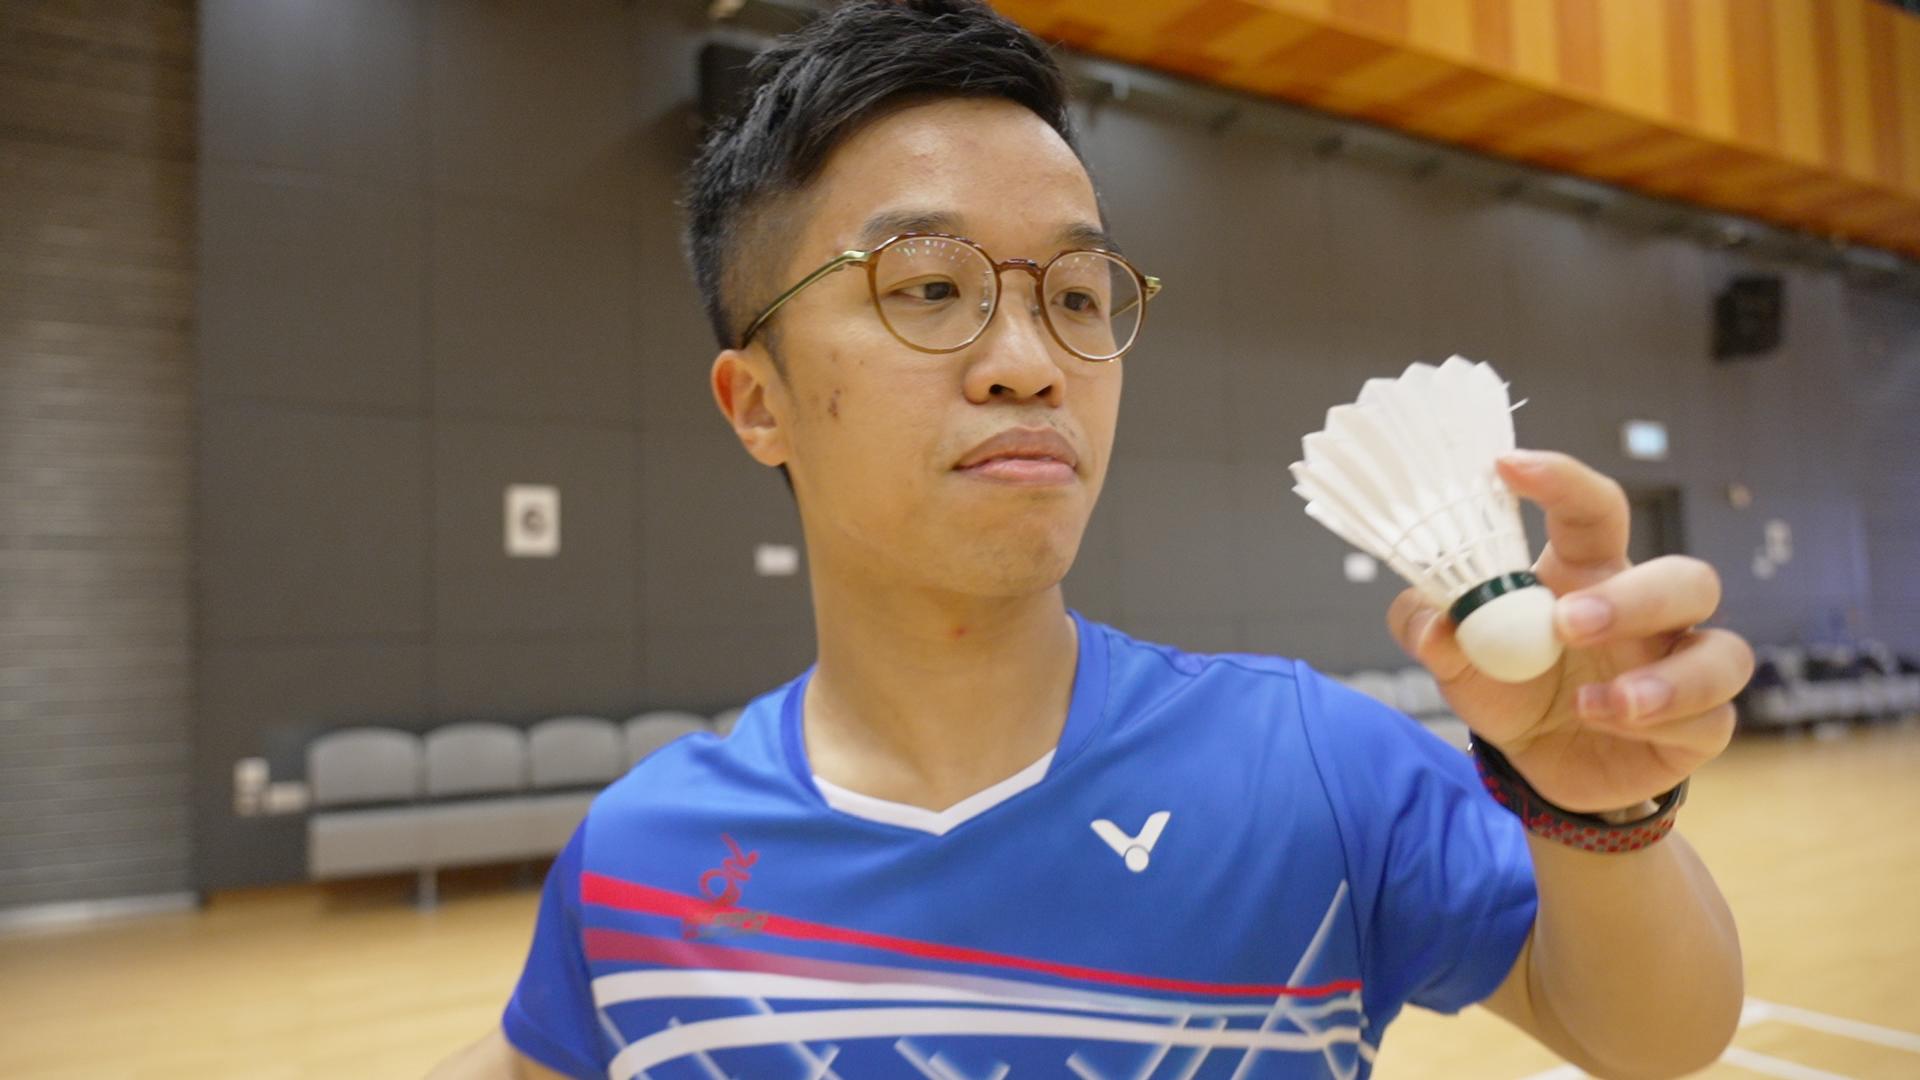 王镇炎（Tim）是残疾人羽毛球SH6级（短肢组）运动员，代表香港出战过多项世界性赛事，夺奖无数。